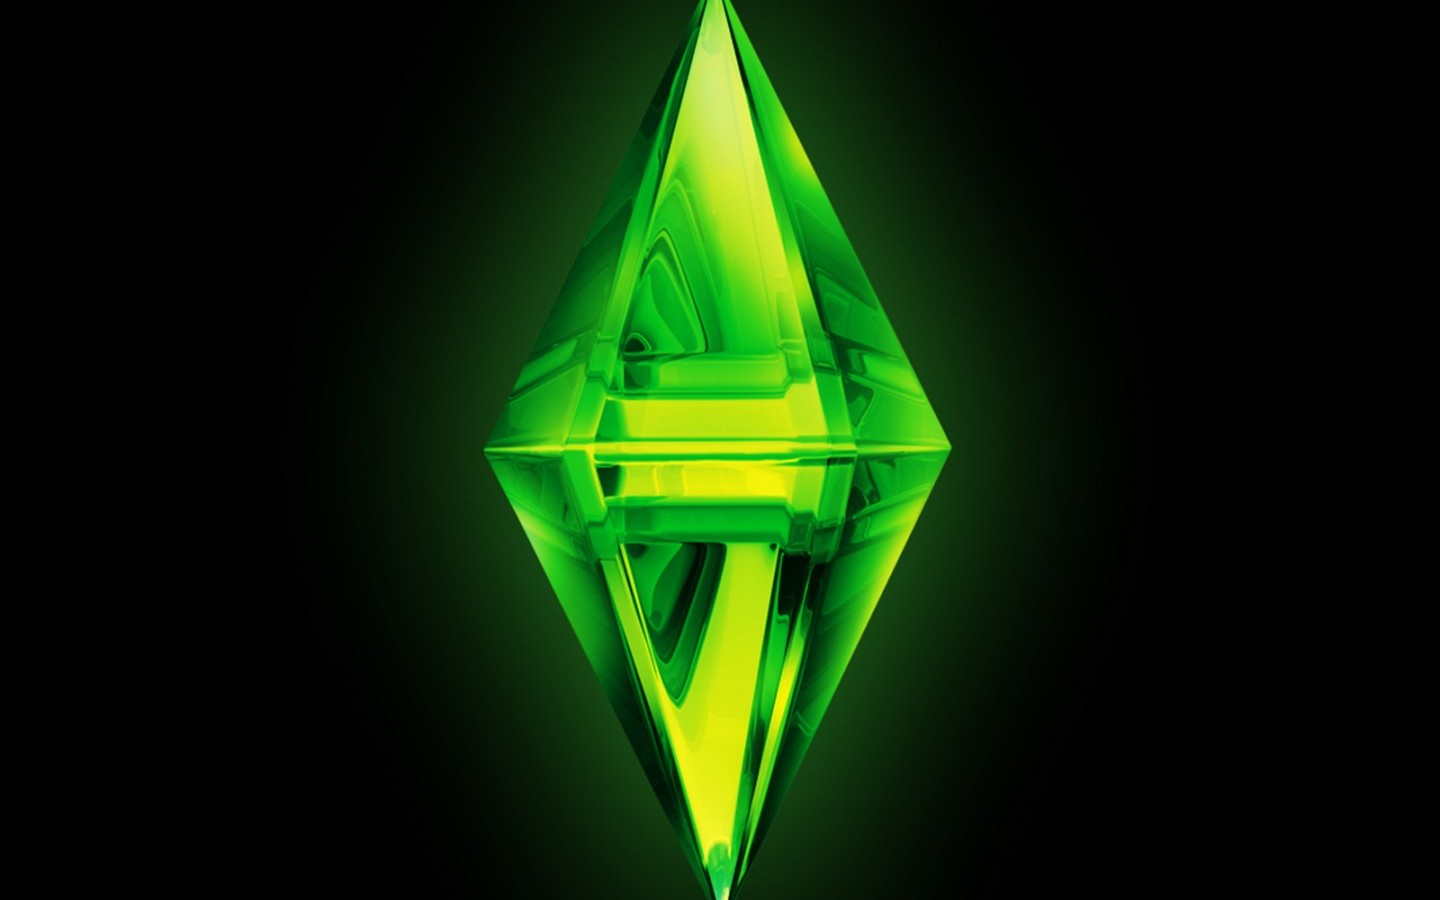 Meilleurs fonds d'écran Les Sims 3 pour l'écran du téléphone